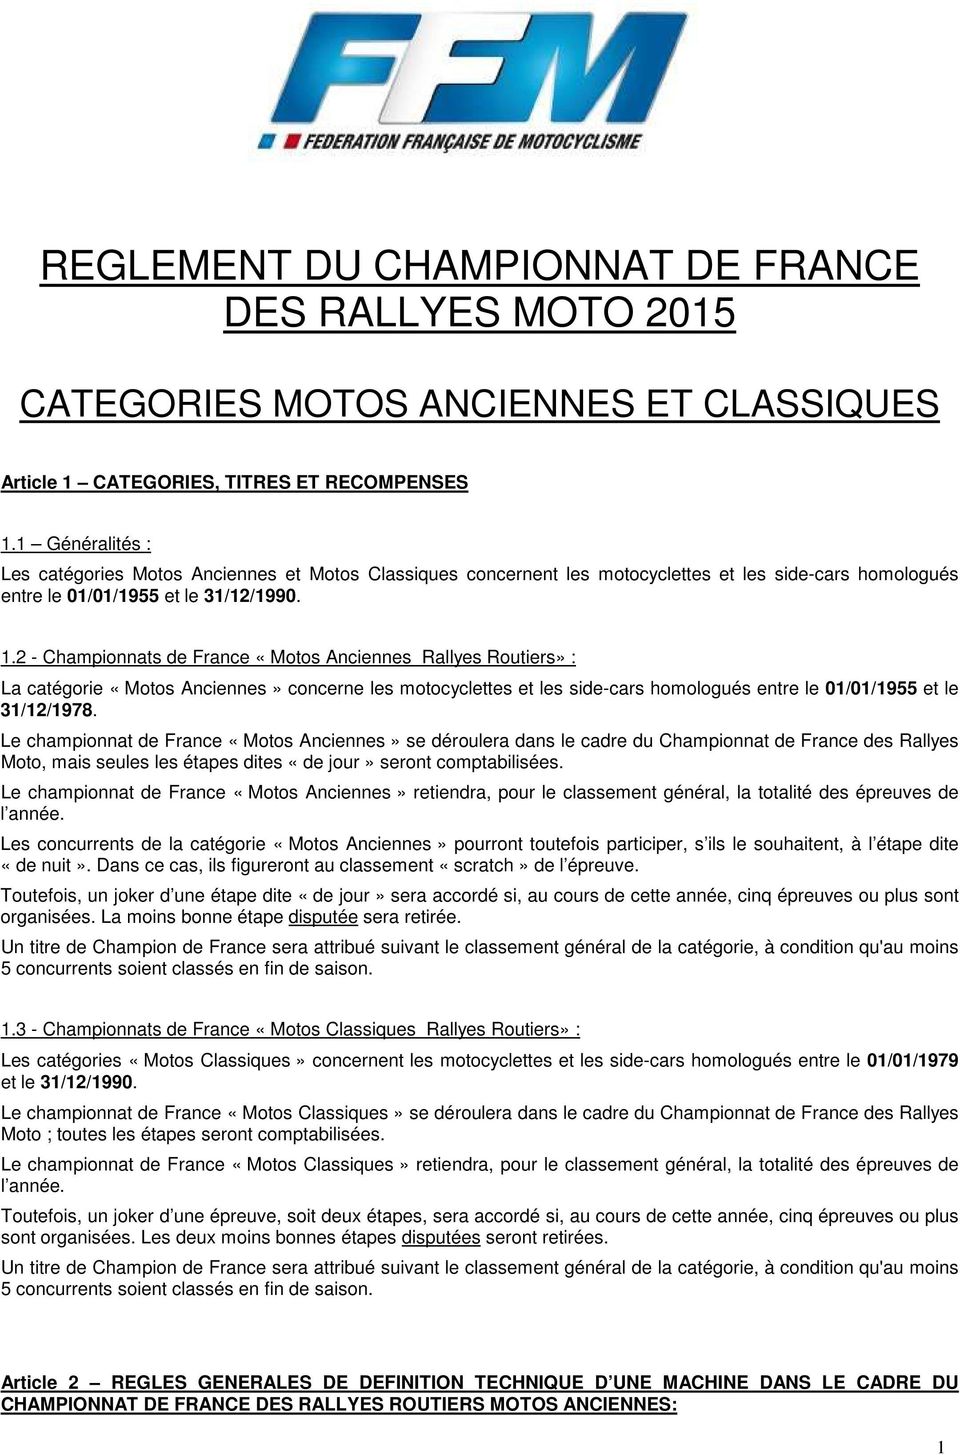 2 - Championnats de France «Motos Anciennes Rallyes Routiers» : La catégorie «Motos Anciennes» concerne les motocyclettes et les side-cars homologués entre le 01/01/1955 et le 31/12/1978.